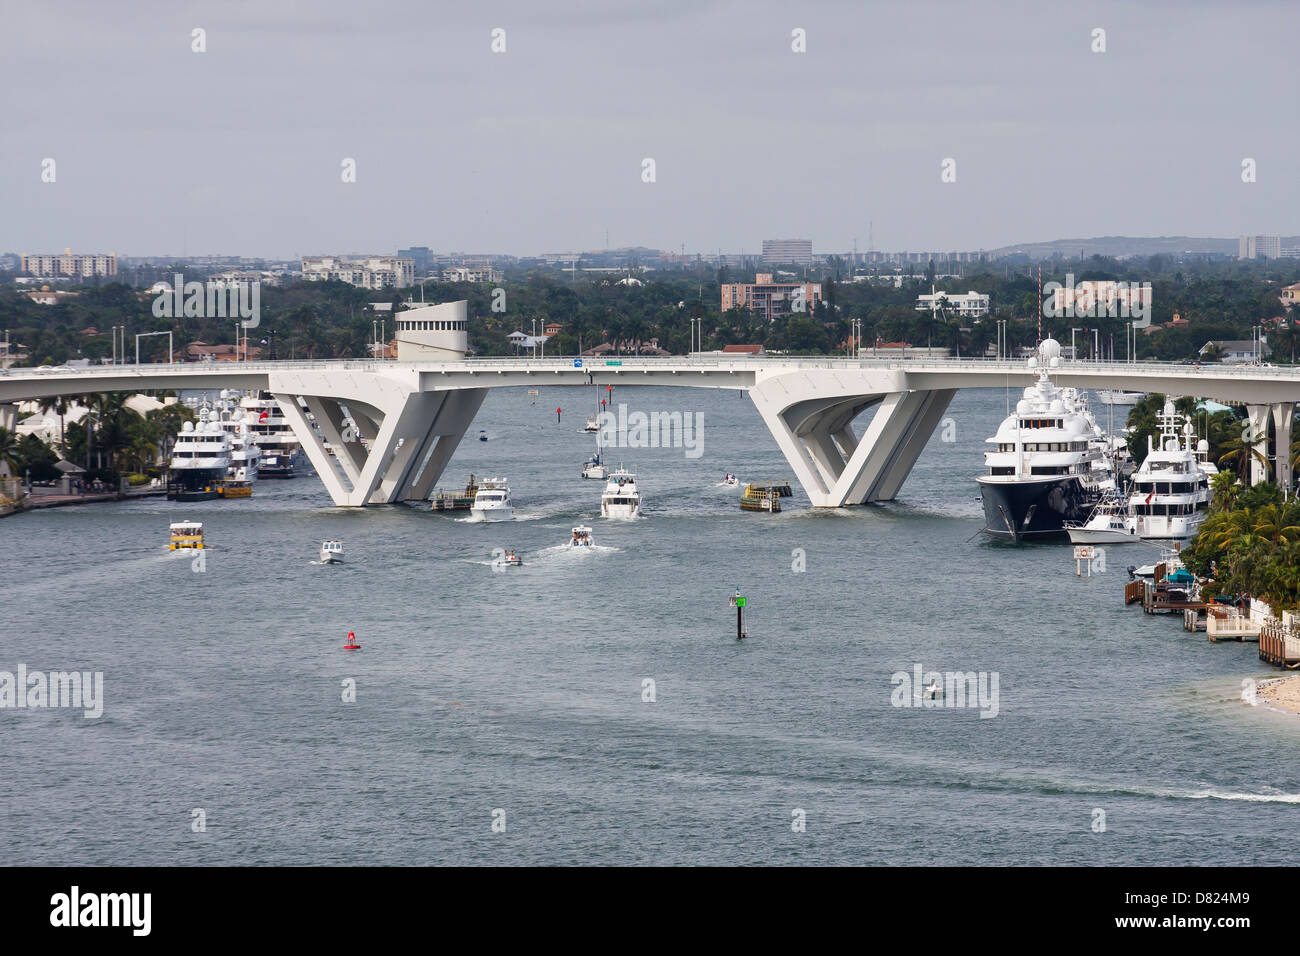 Sportboote und Yachten um eine Zugbrücke geschlossen Stockfoto